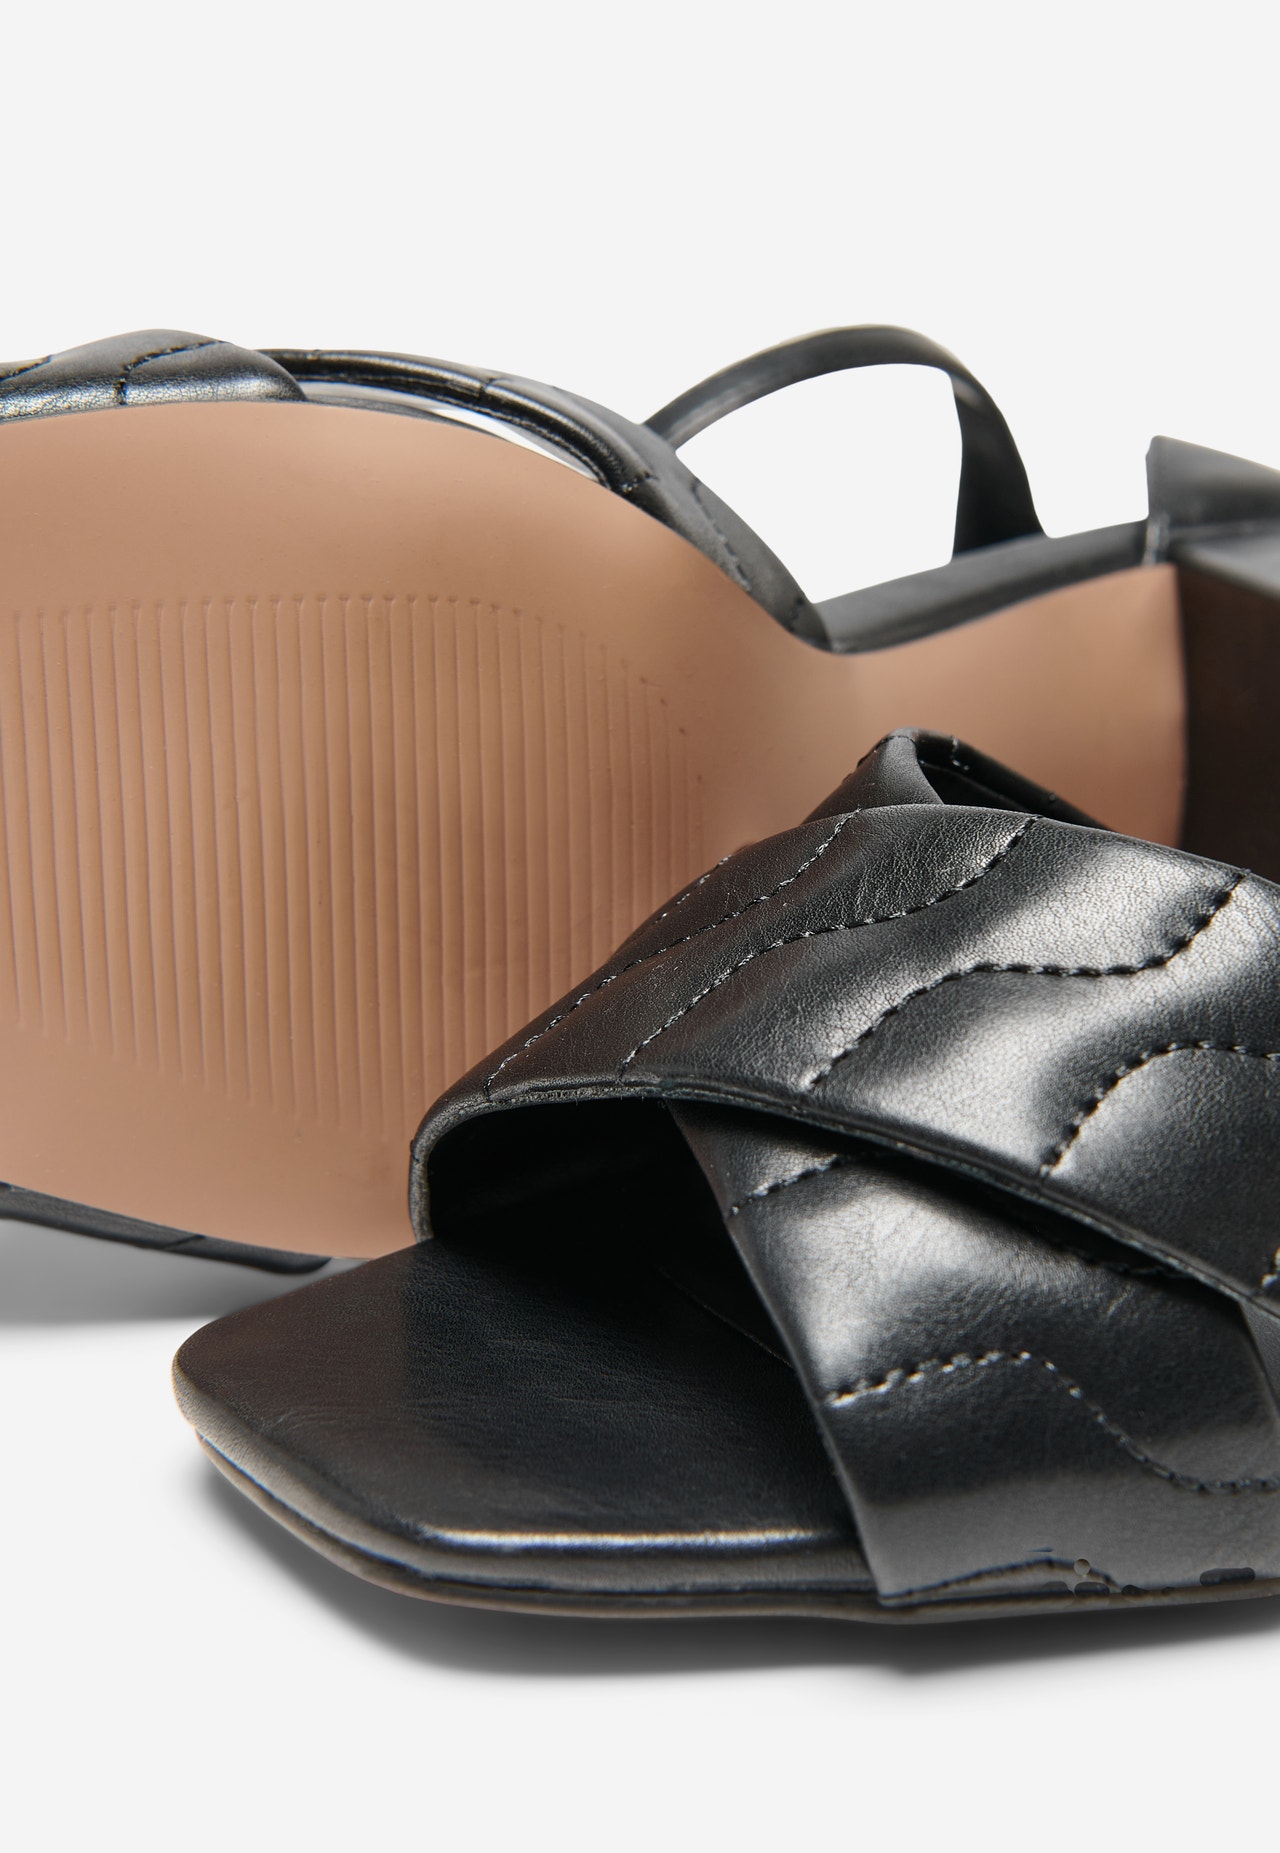 ONLY Open toe Adjustable strap Sandal -Black - 15271557